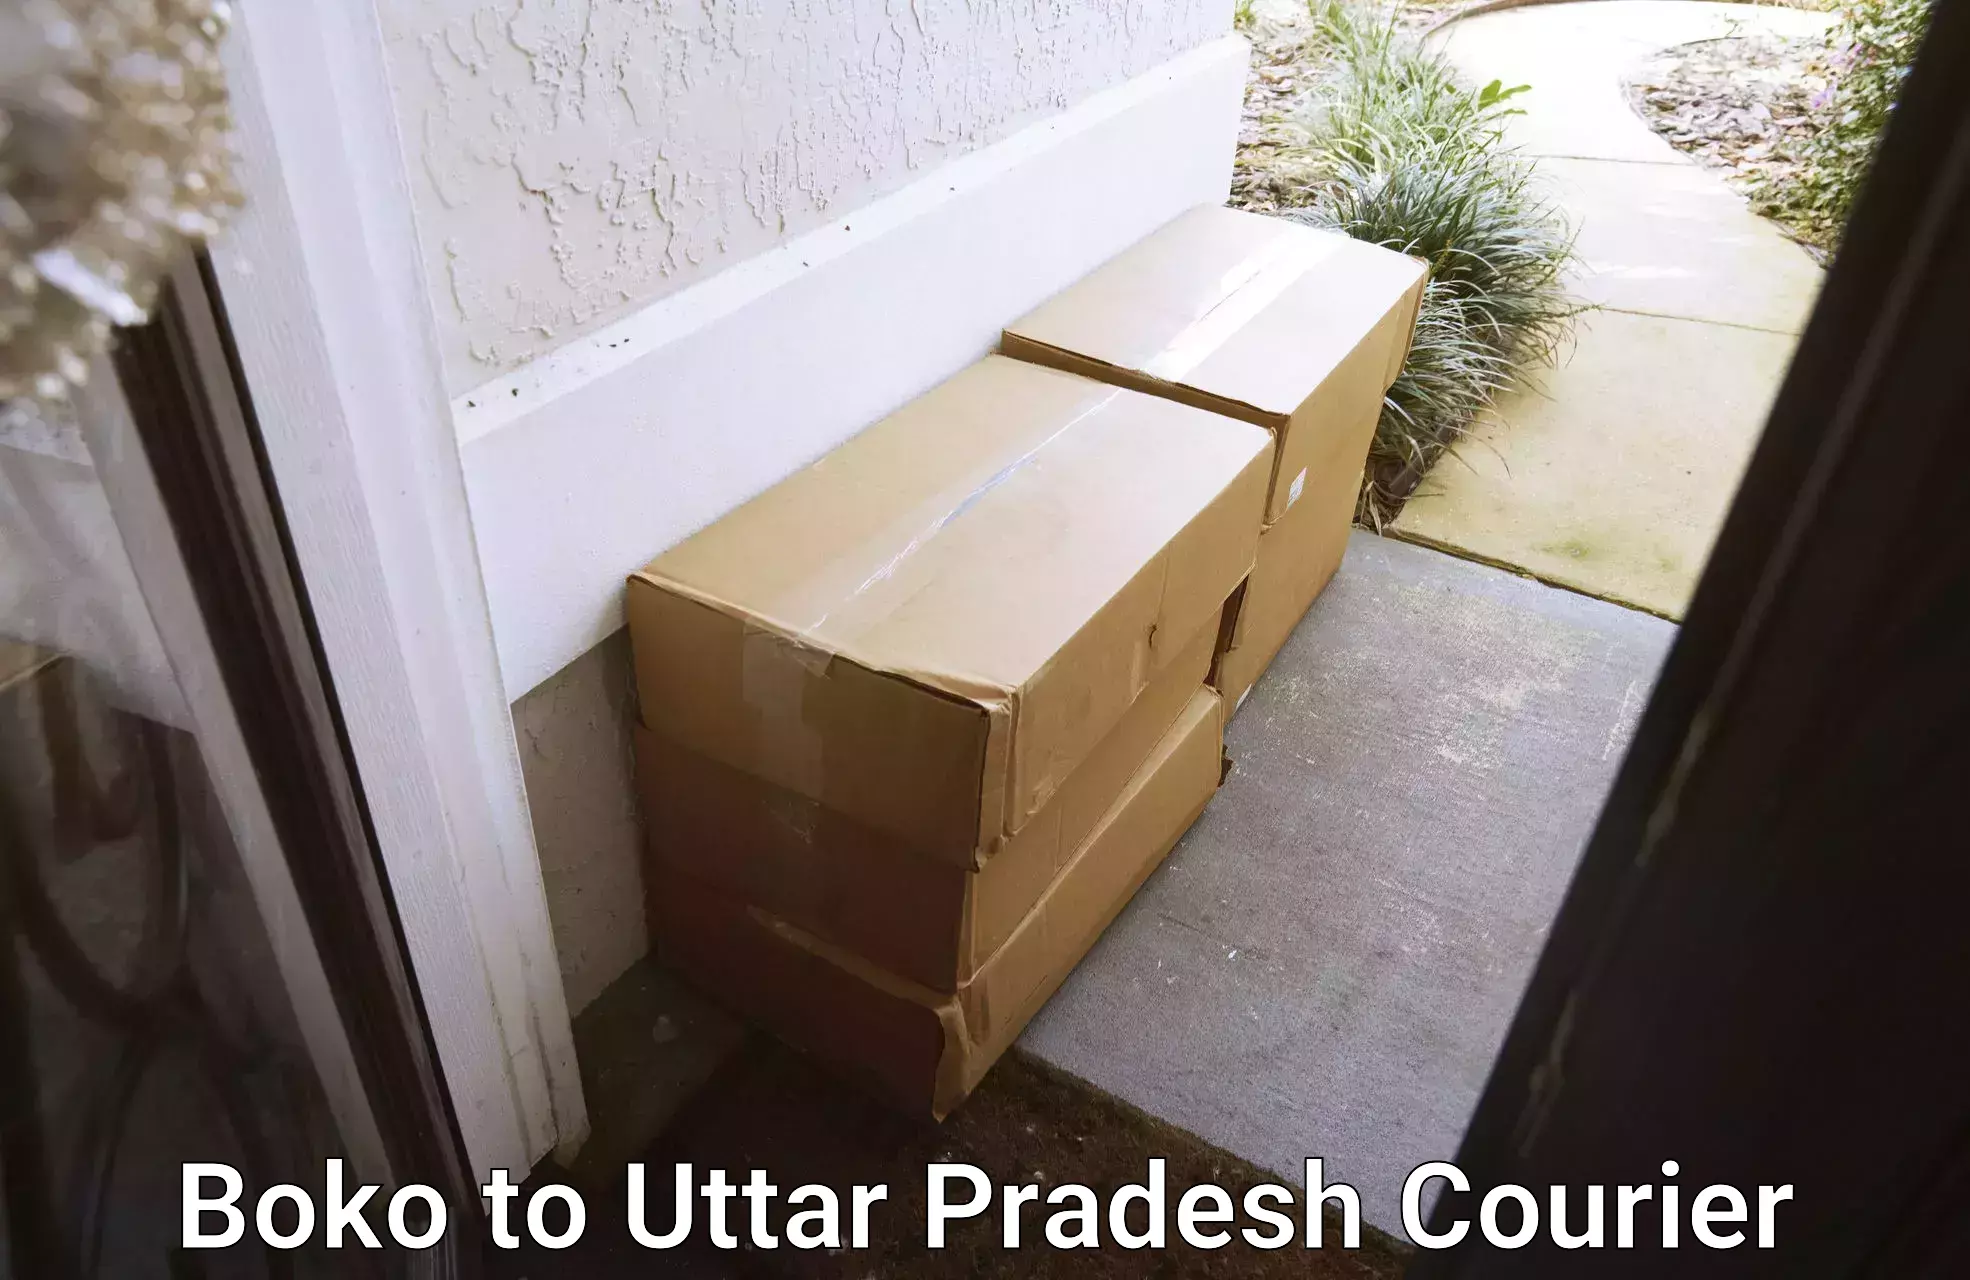 International logistics solutions Boko to Uttar Pradesh